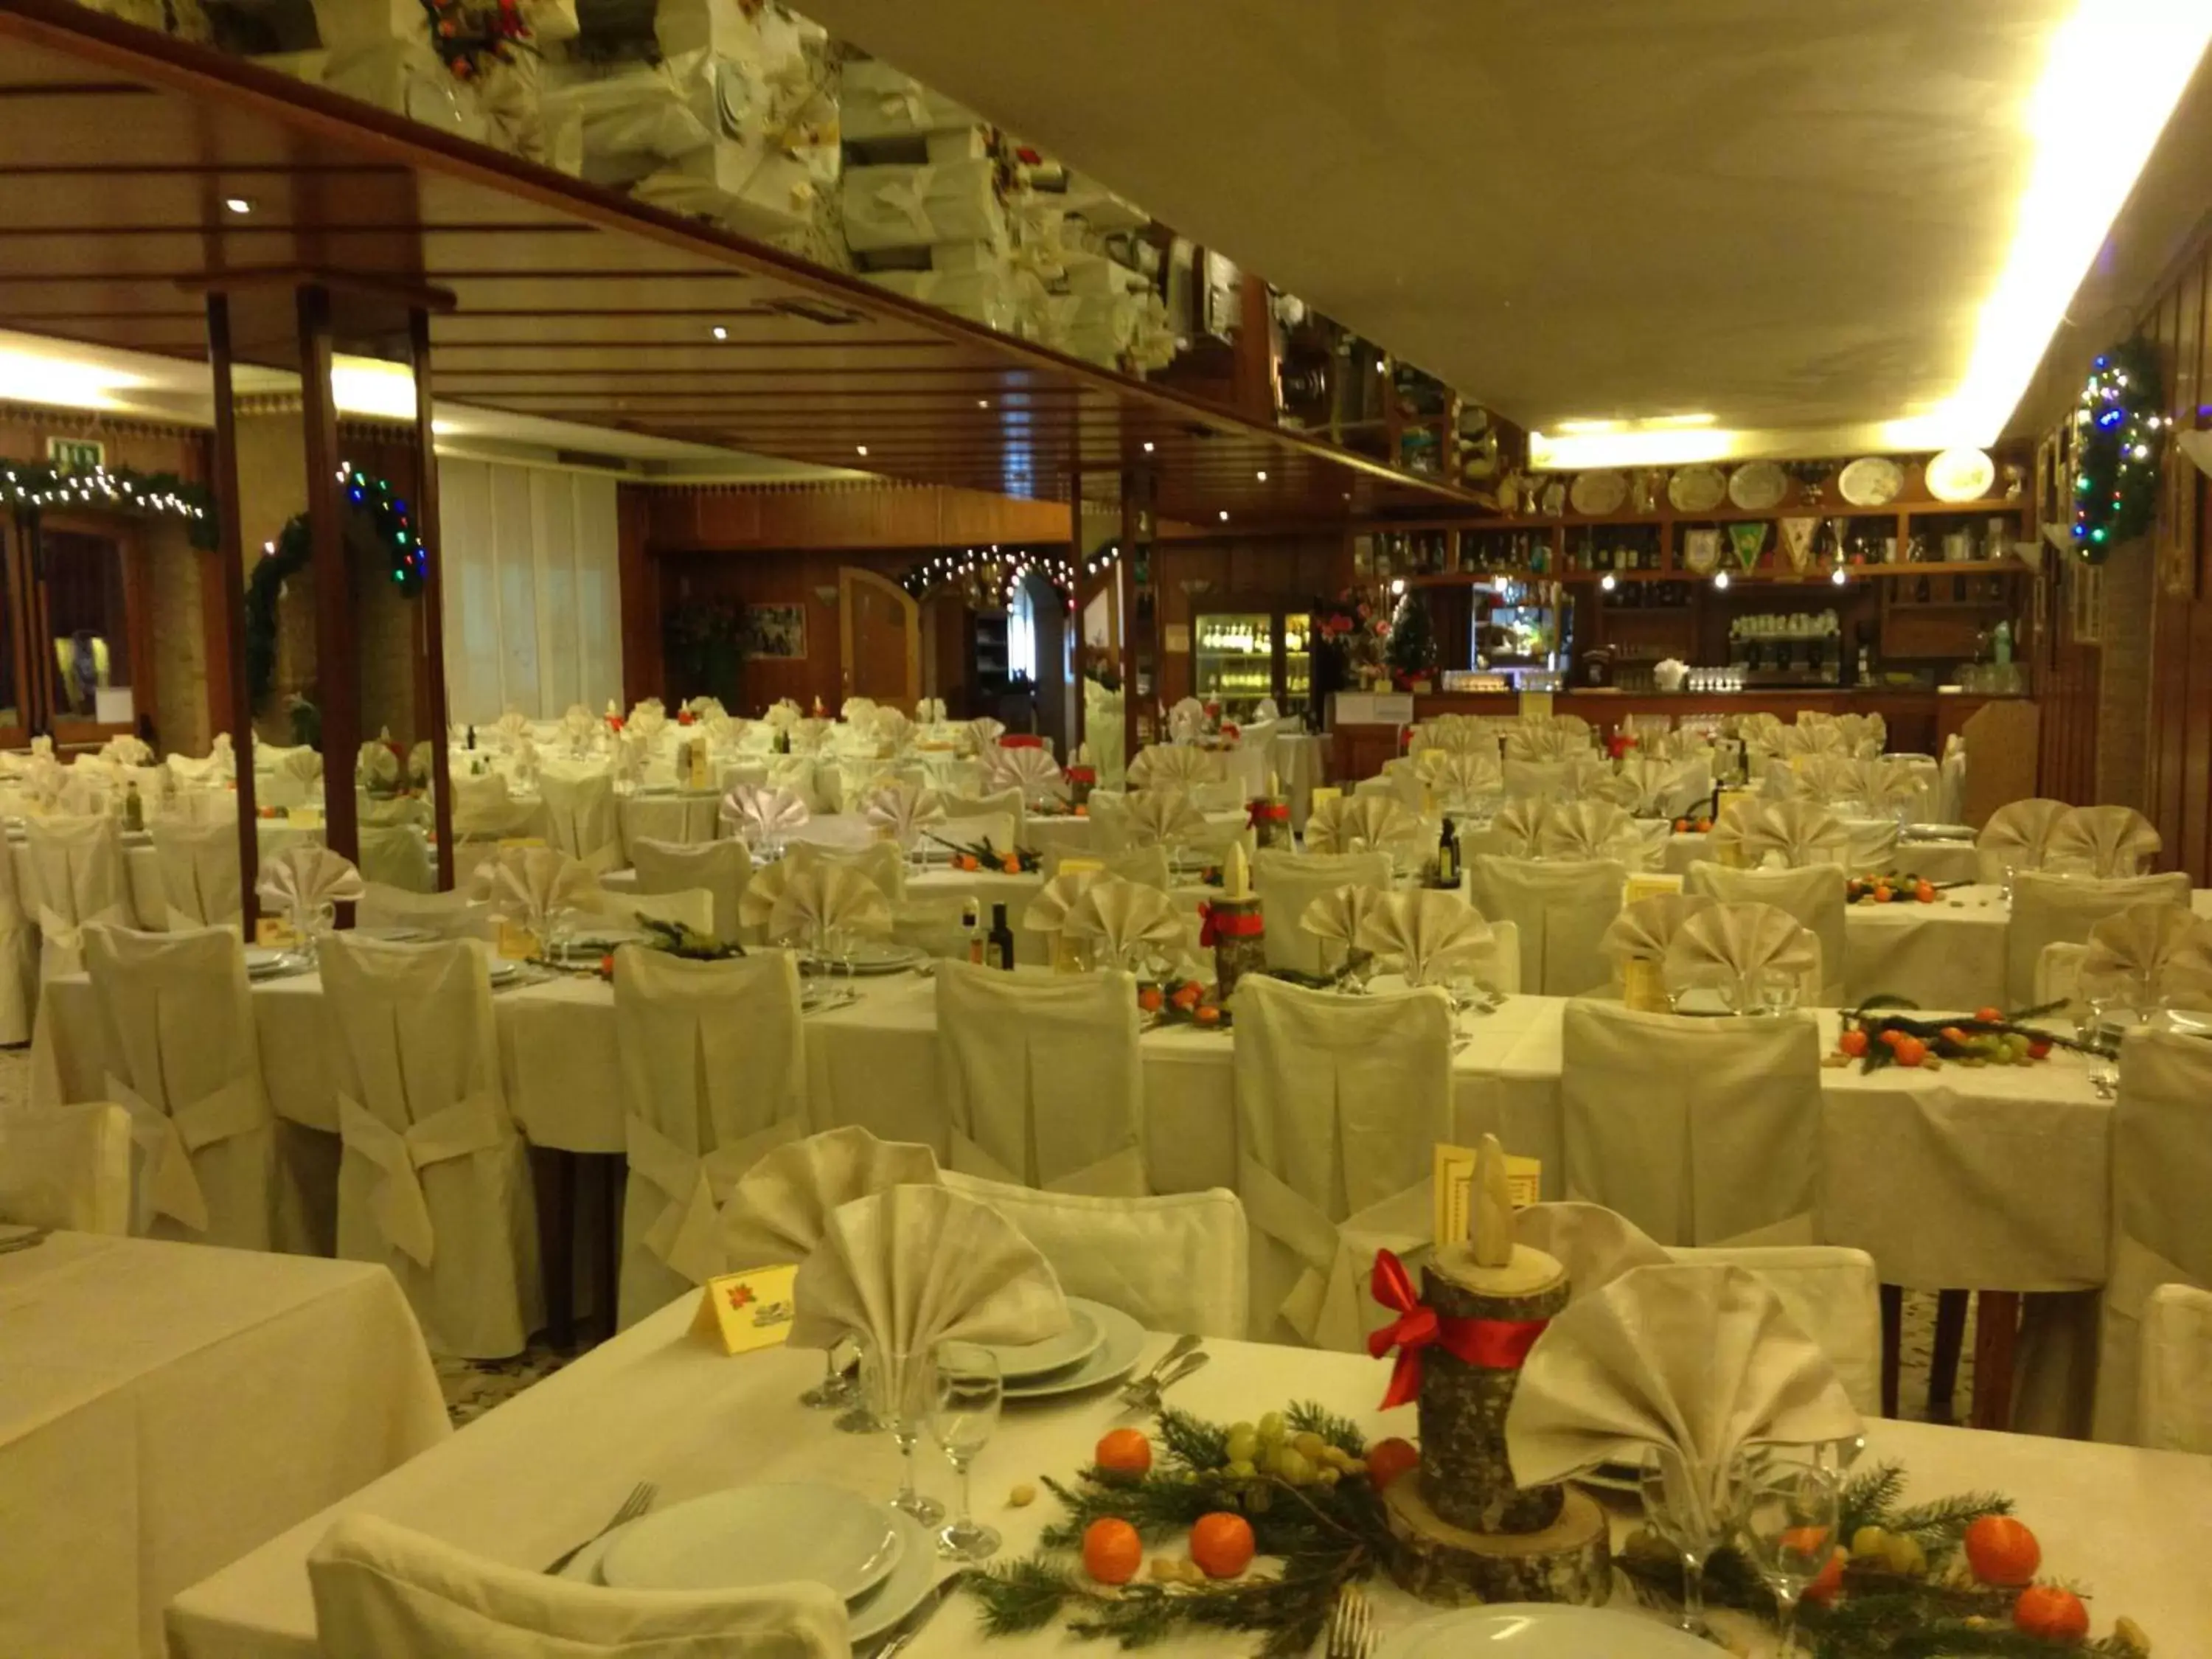 Dining area, Banquet Facilities in Hotel Pizzeria Ristorante "Al Leone"